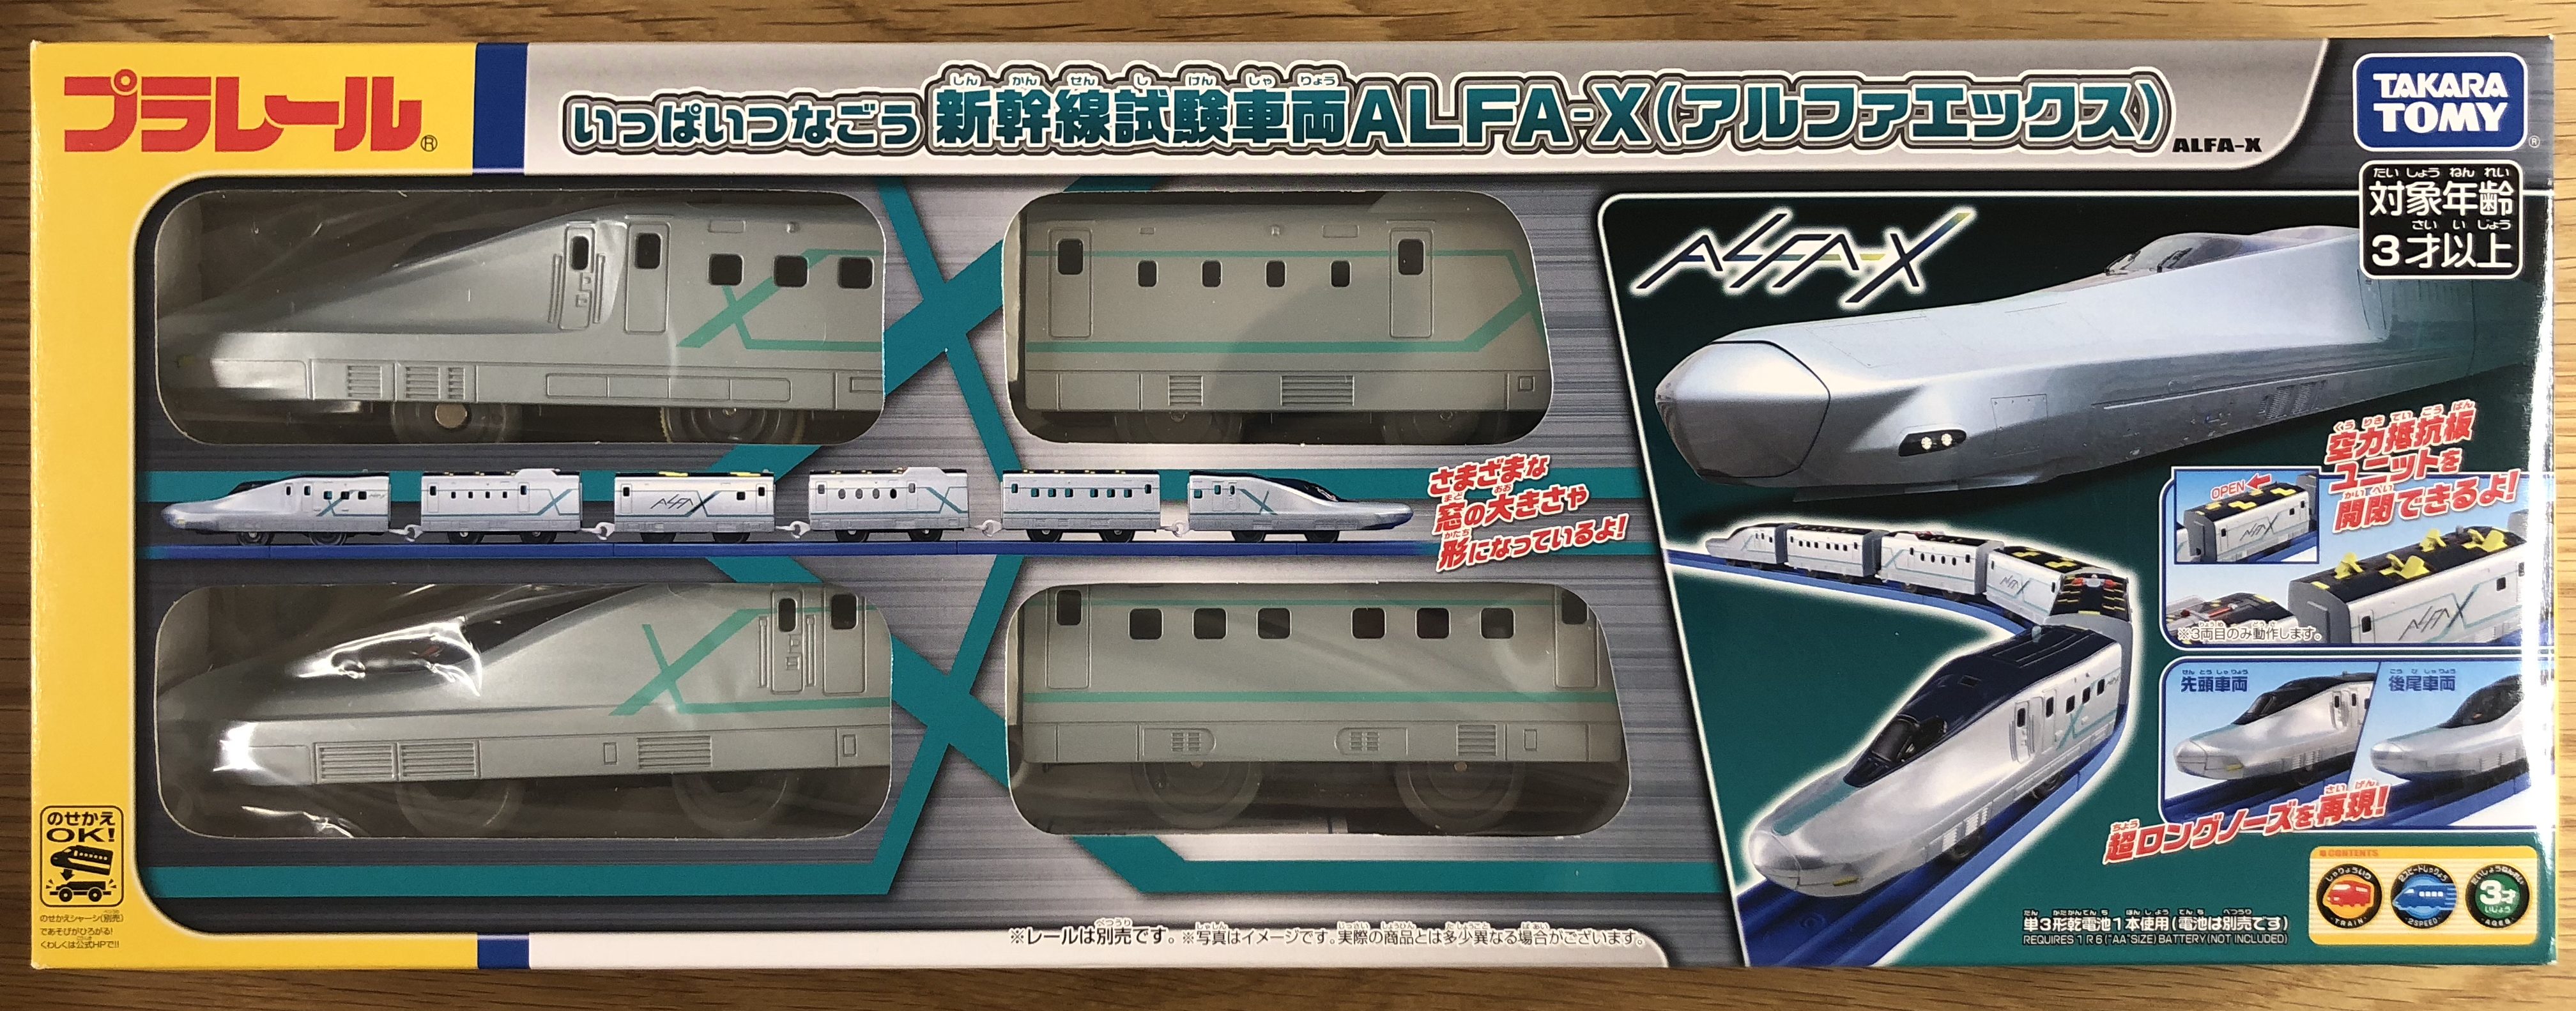 プラレール いっぱいつなごう 新幹線試験車両ALFA-X(アルファエックス)